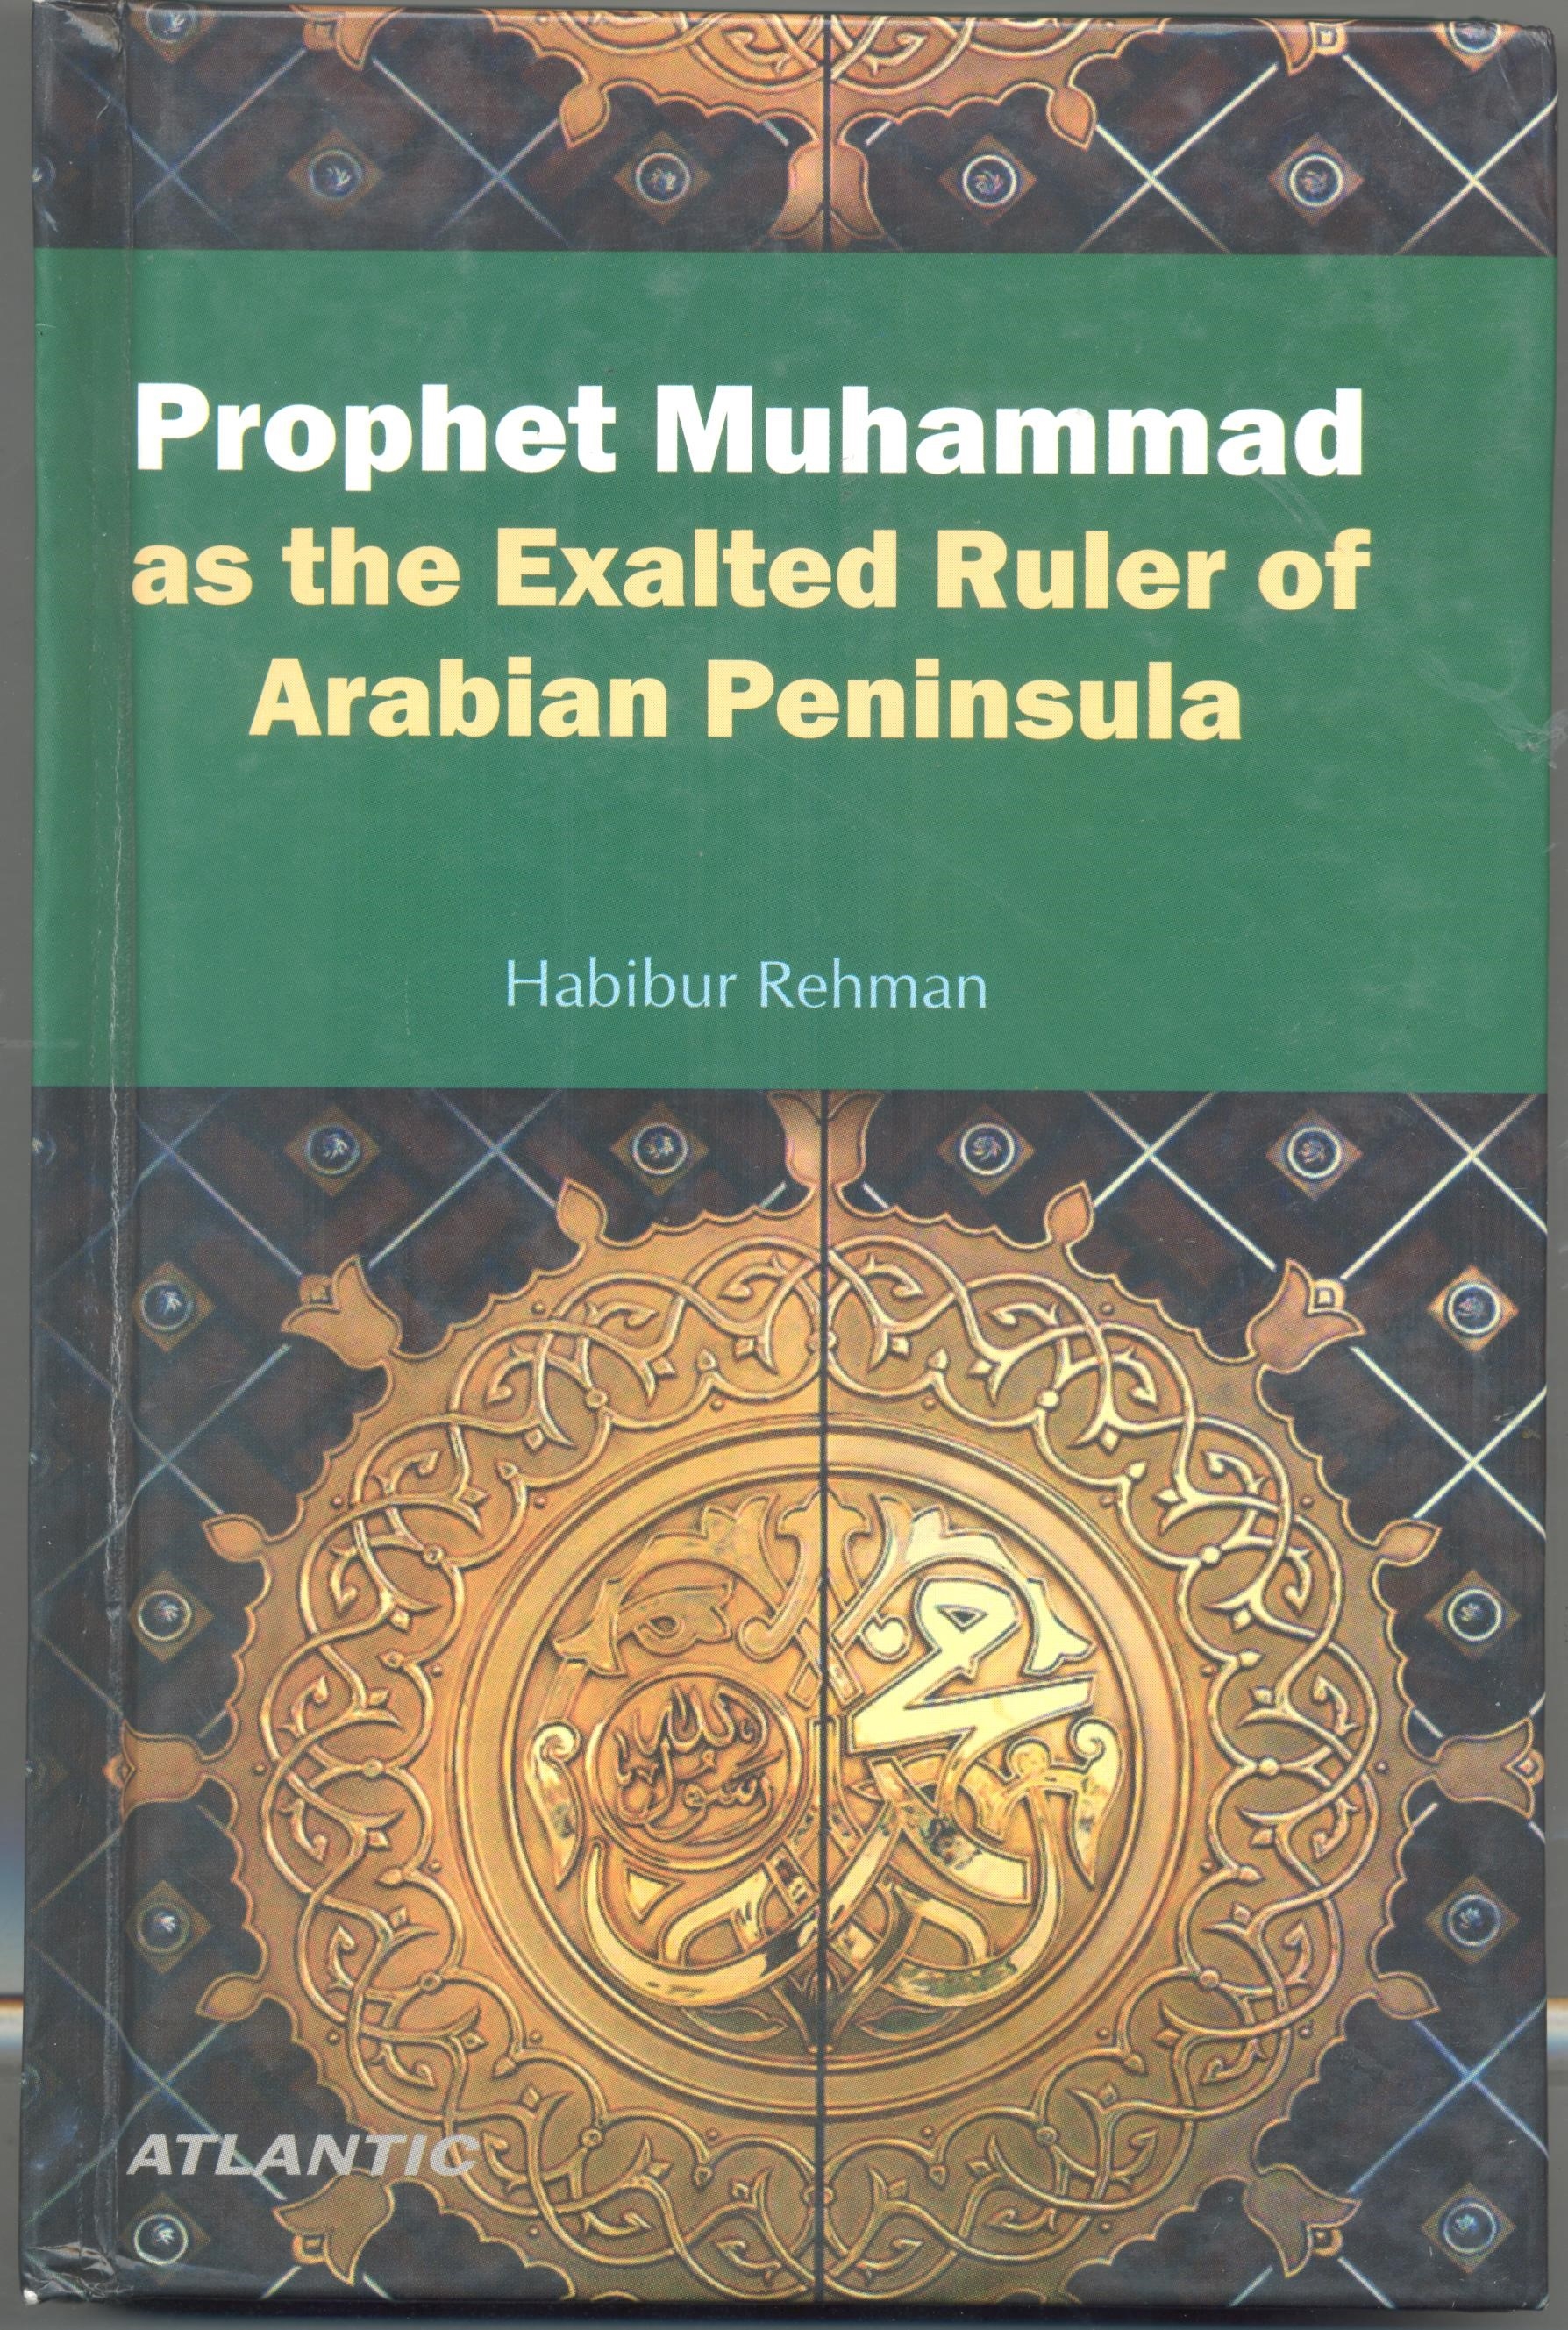 إصدار کتاب حول نبي الإسلام (ص) في الهند